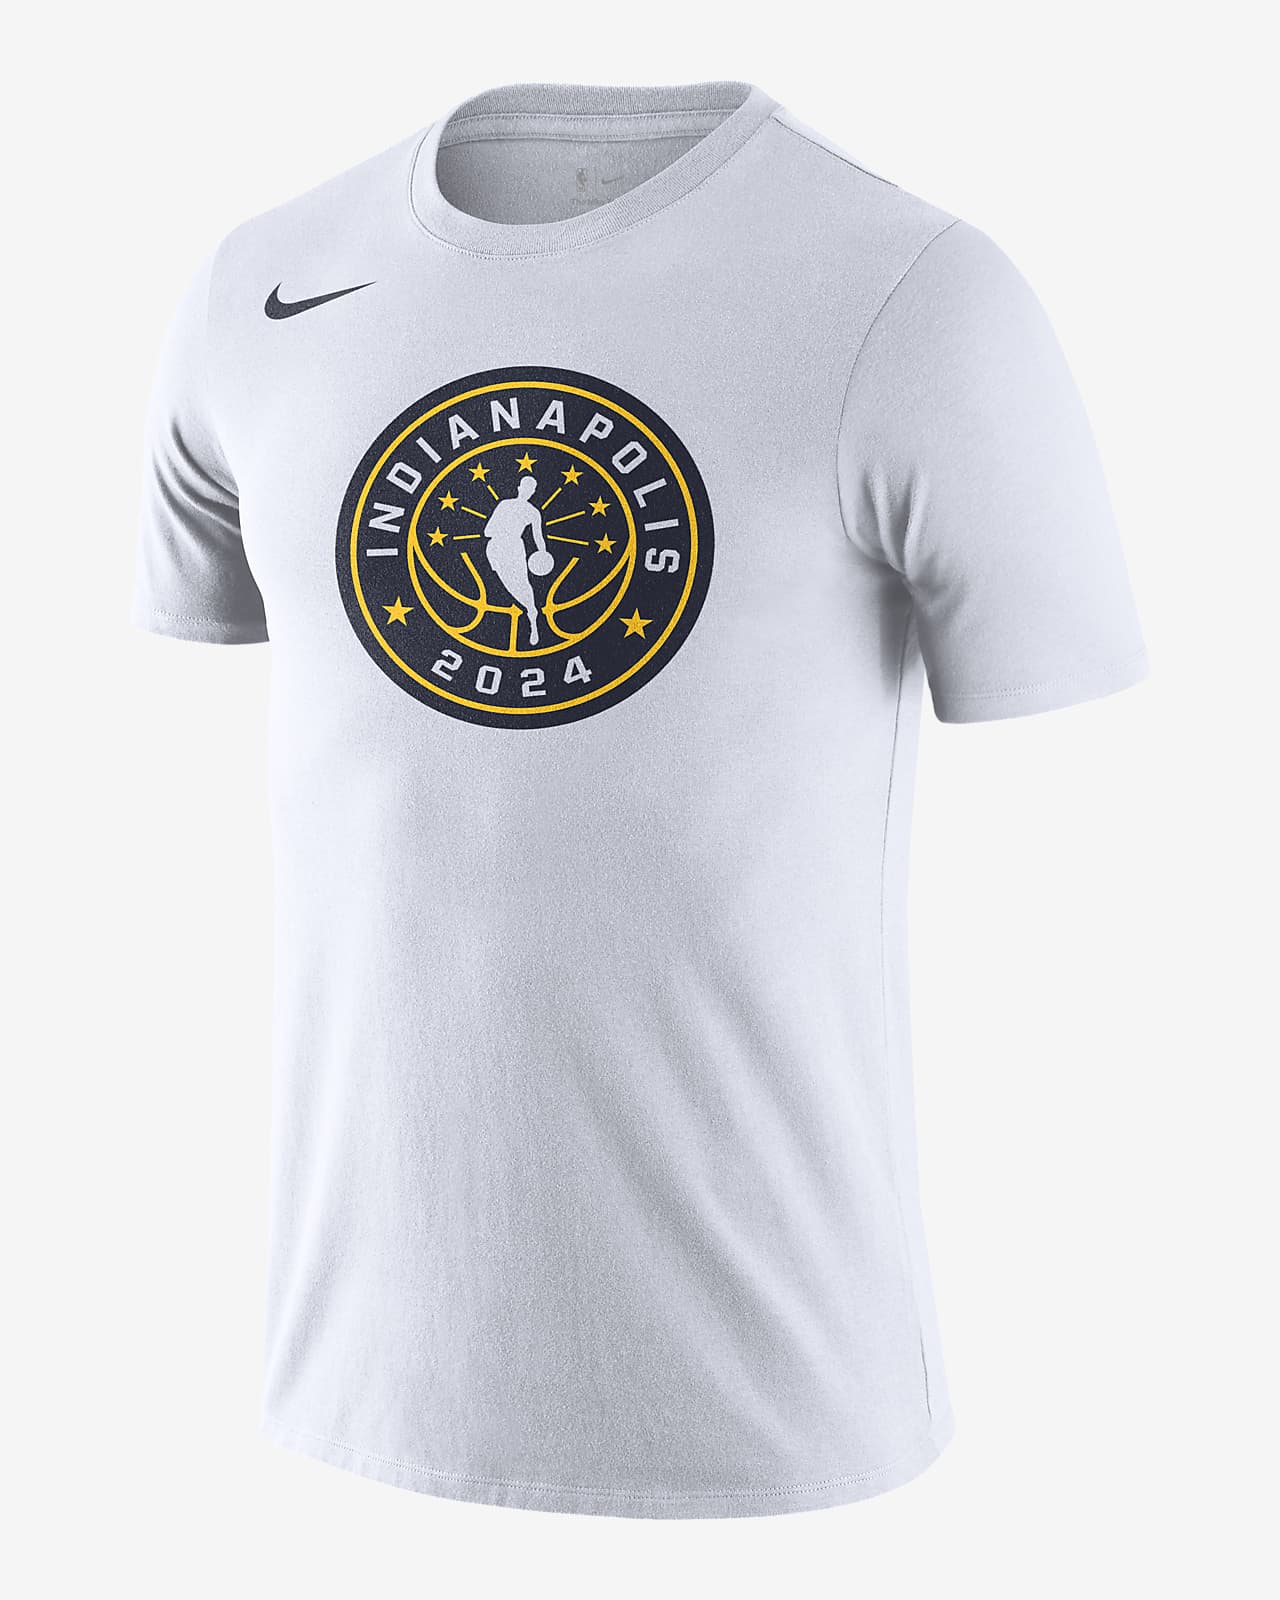 Team 31 All-Star Weekend Essential Camiseta de cuello redondo Nike de la NBA - Hombre